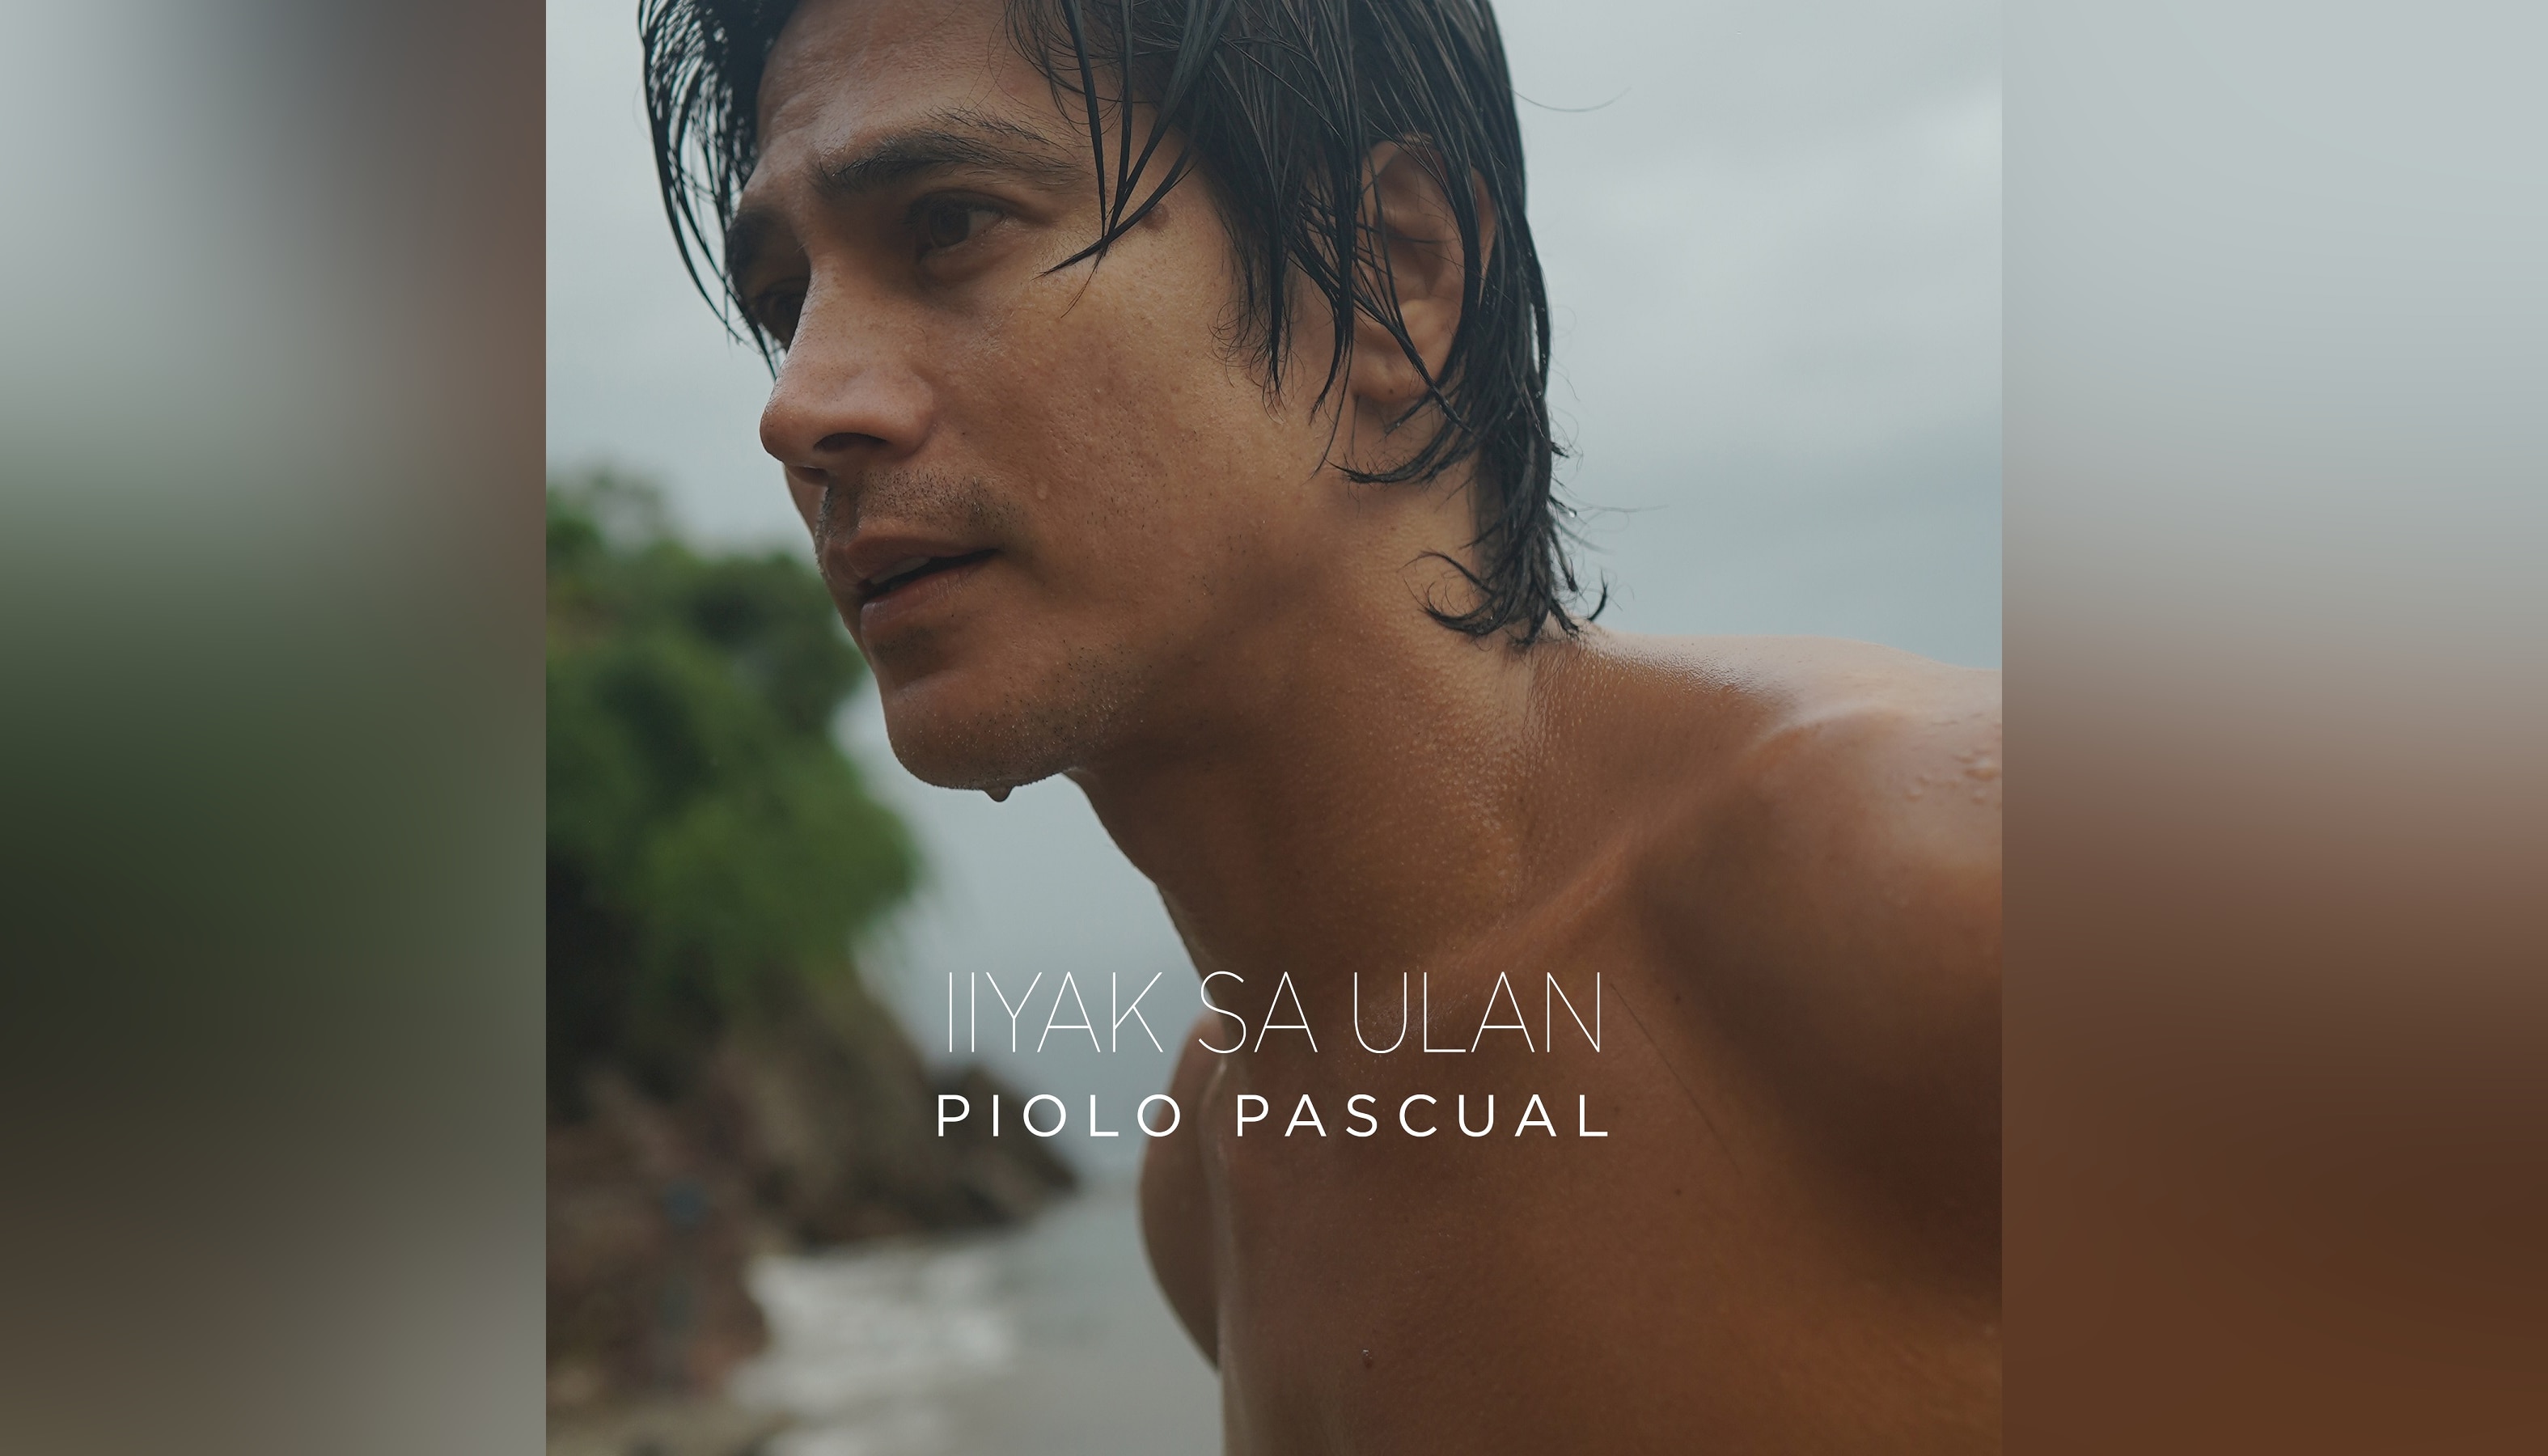 Piolo releases new song "Iiyak sa Ulan"